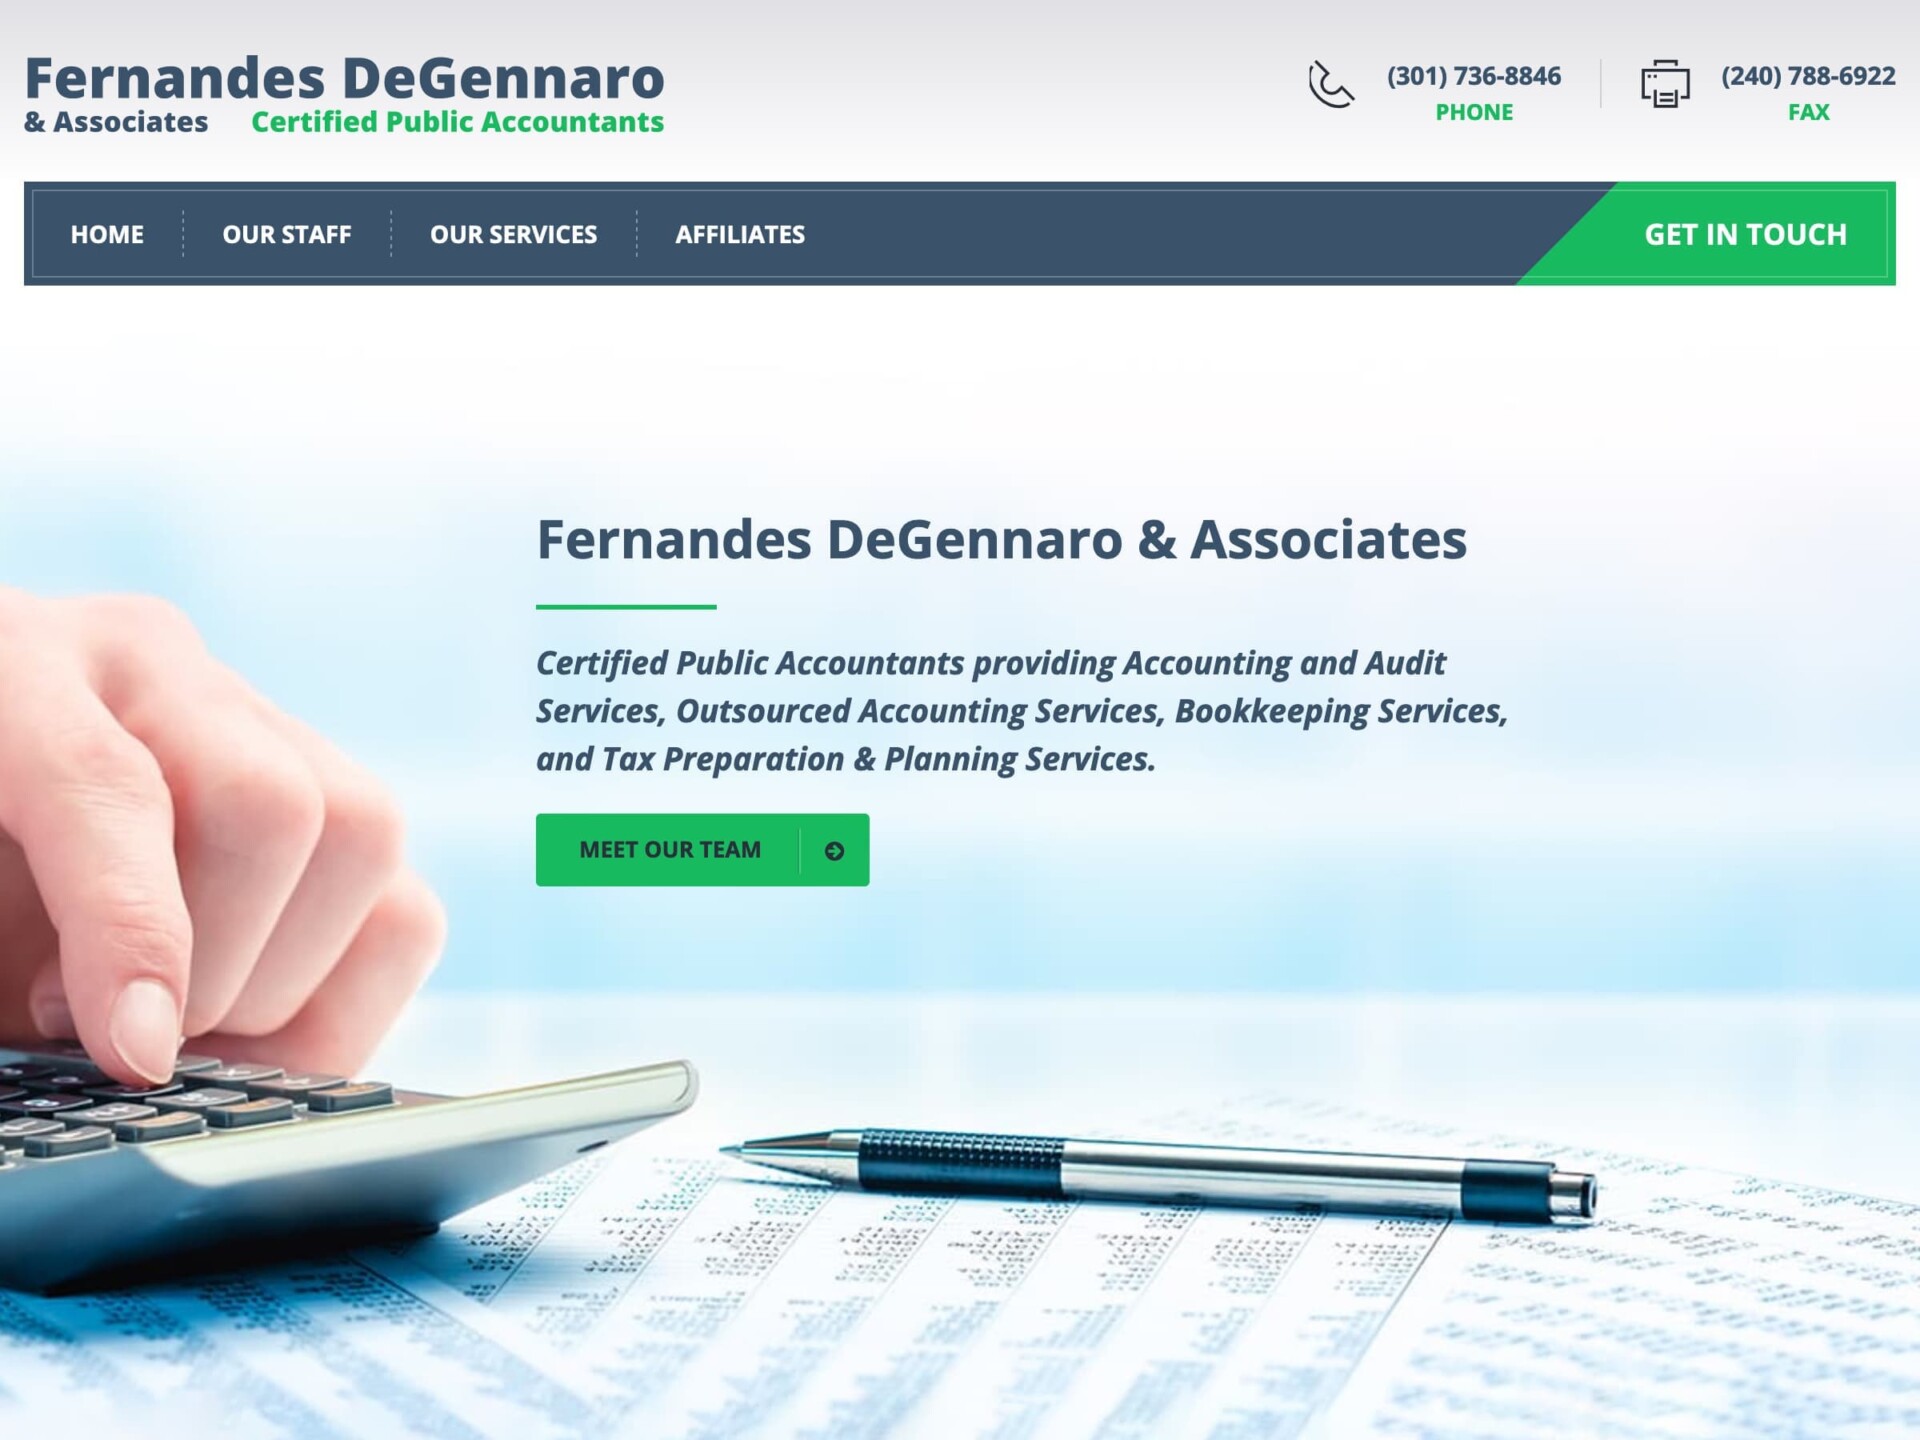 Fernandes DeGennaro & Associates